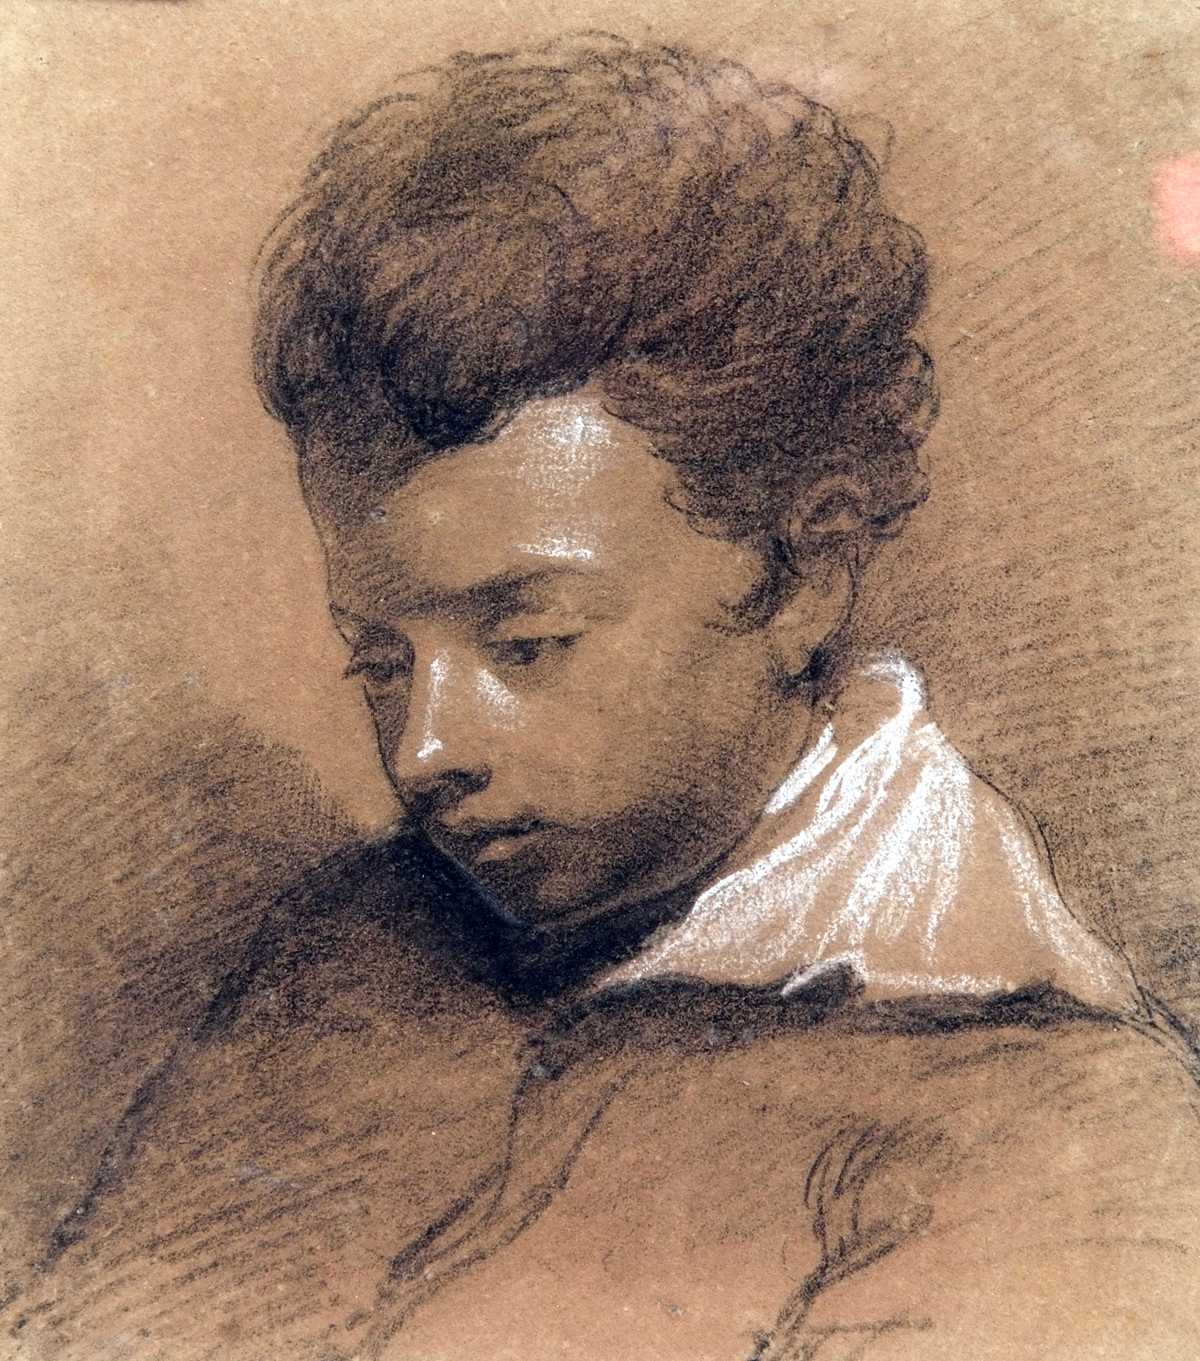 JOSEPH GELDART (1808-1882, BRITISH)
A Portrait Sketch of Geldart’s Son George
pencil drawing,